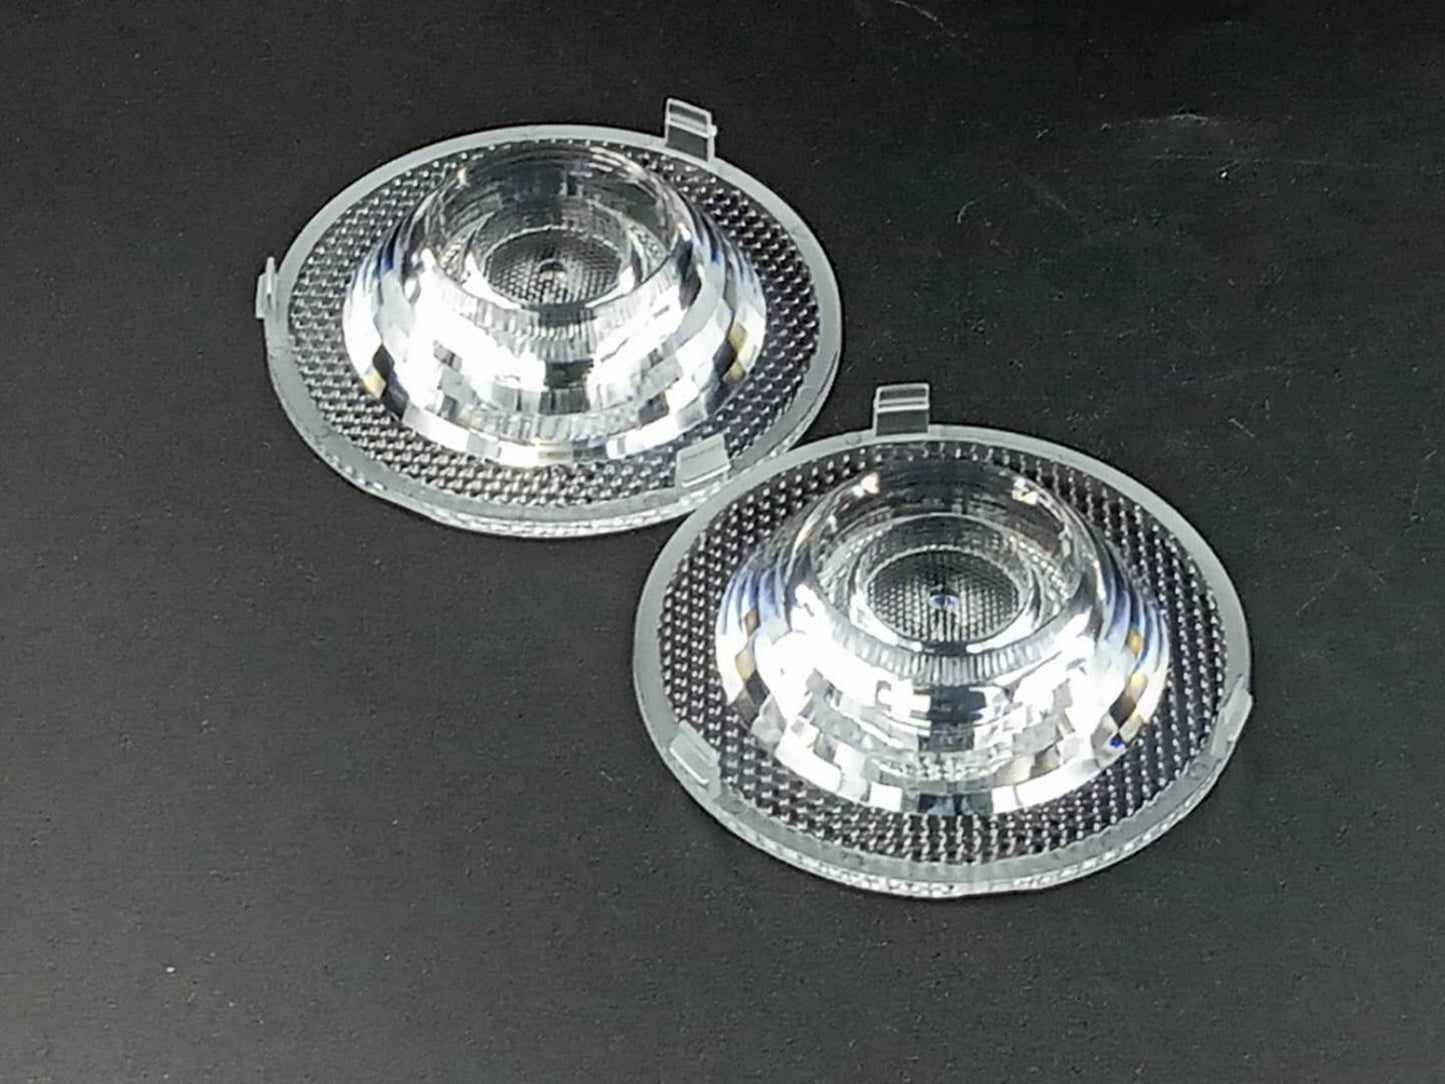 COBスポットライトレンズ商業用照明用直径76mmの光学レンズ